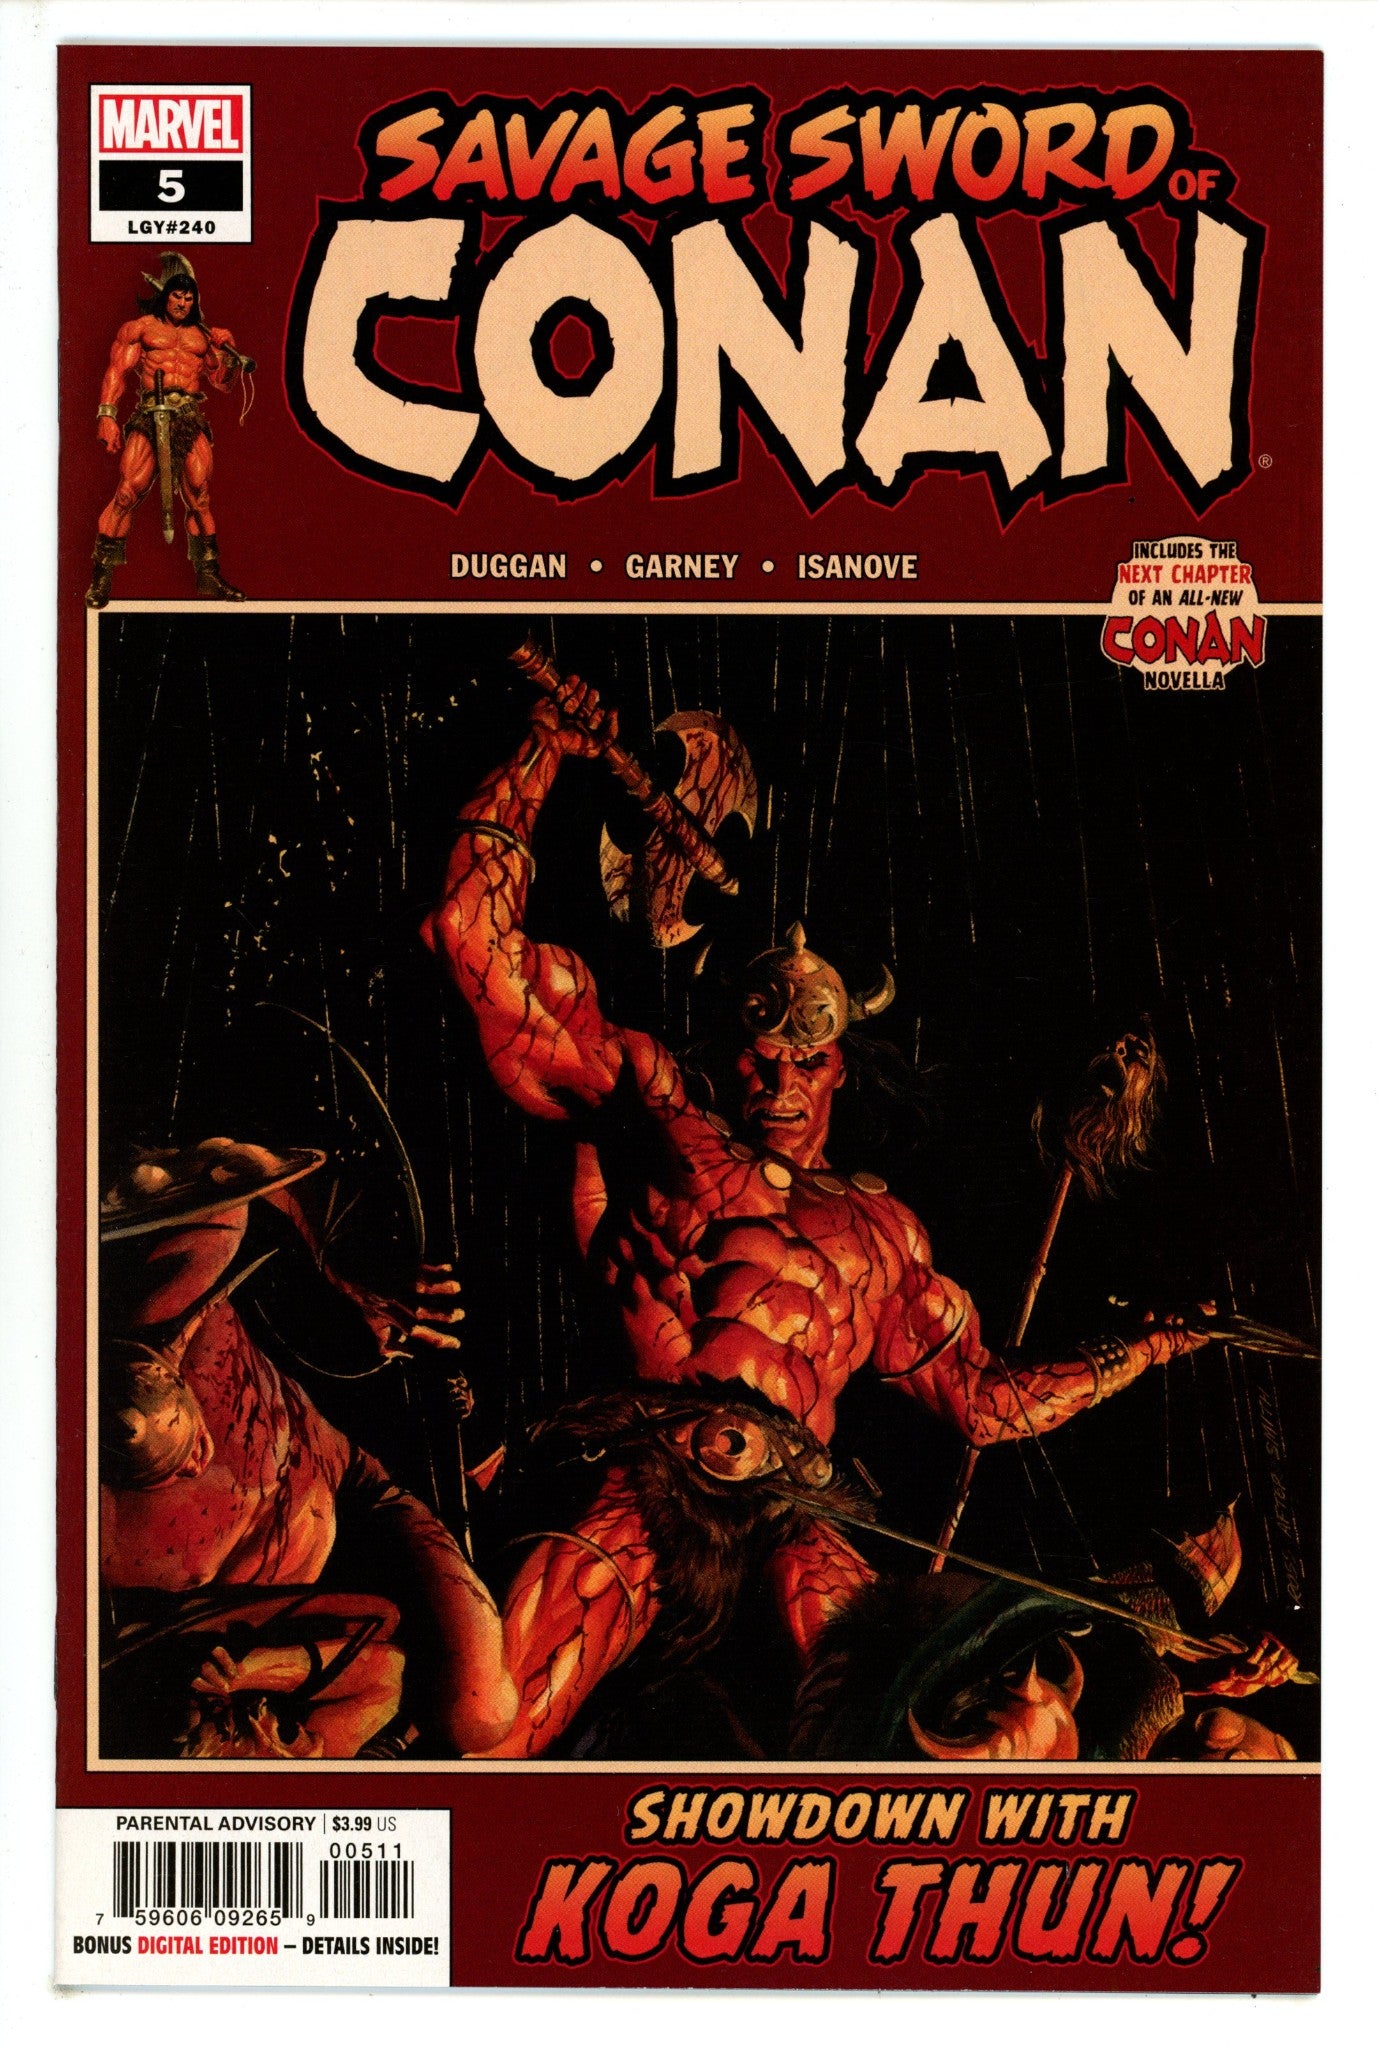 Savage Sword of Conan Vol 2 5 (240) High Grade (2019) 